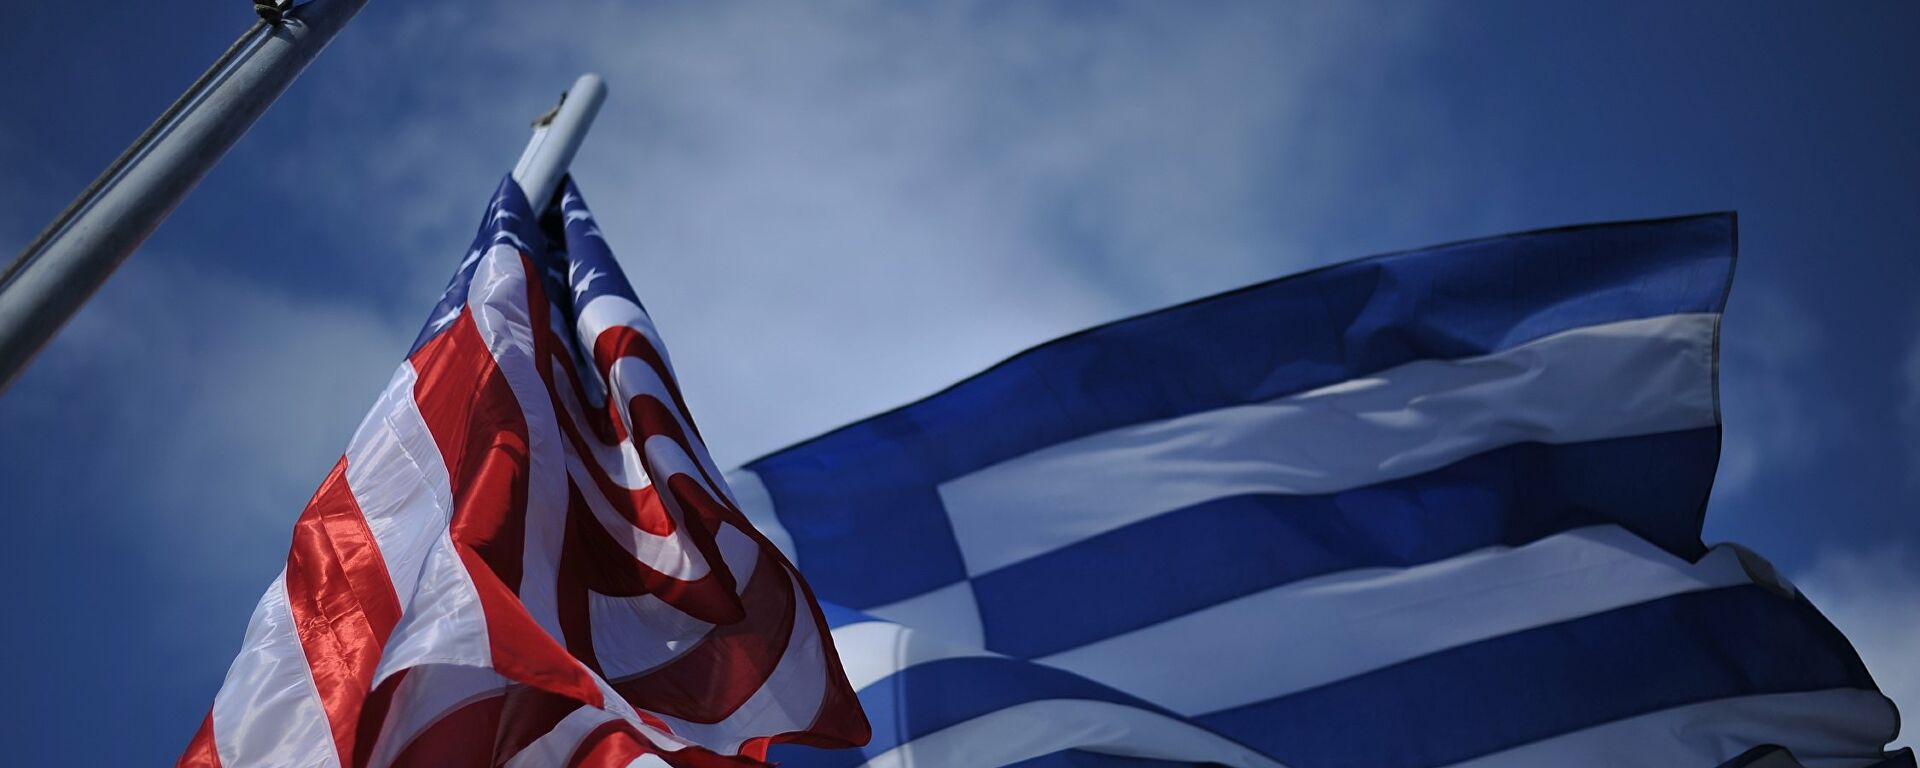 Οι σημαίες Ελλάδας - ΗΠΑ - Sputnik Ελλάδα, 1920, 13.10.2021